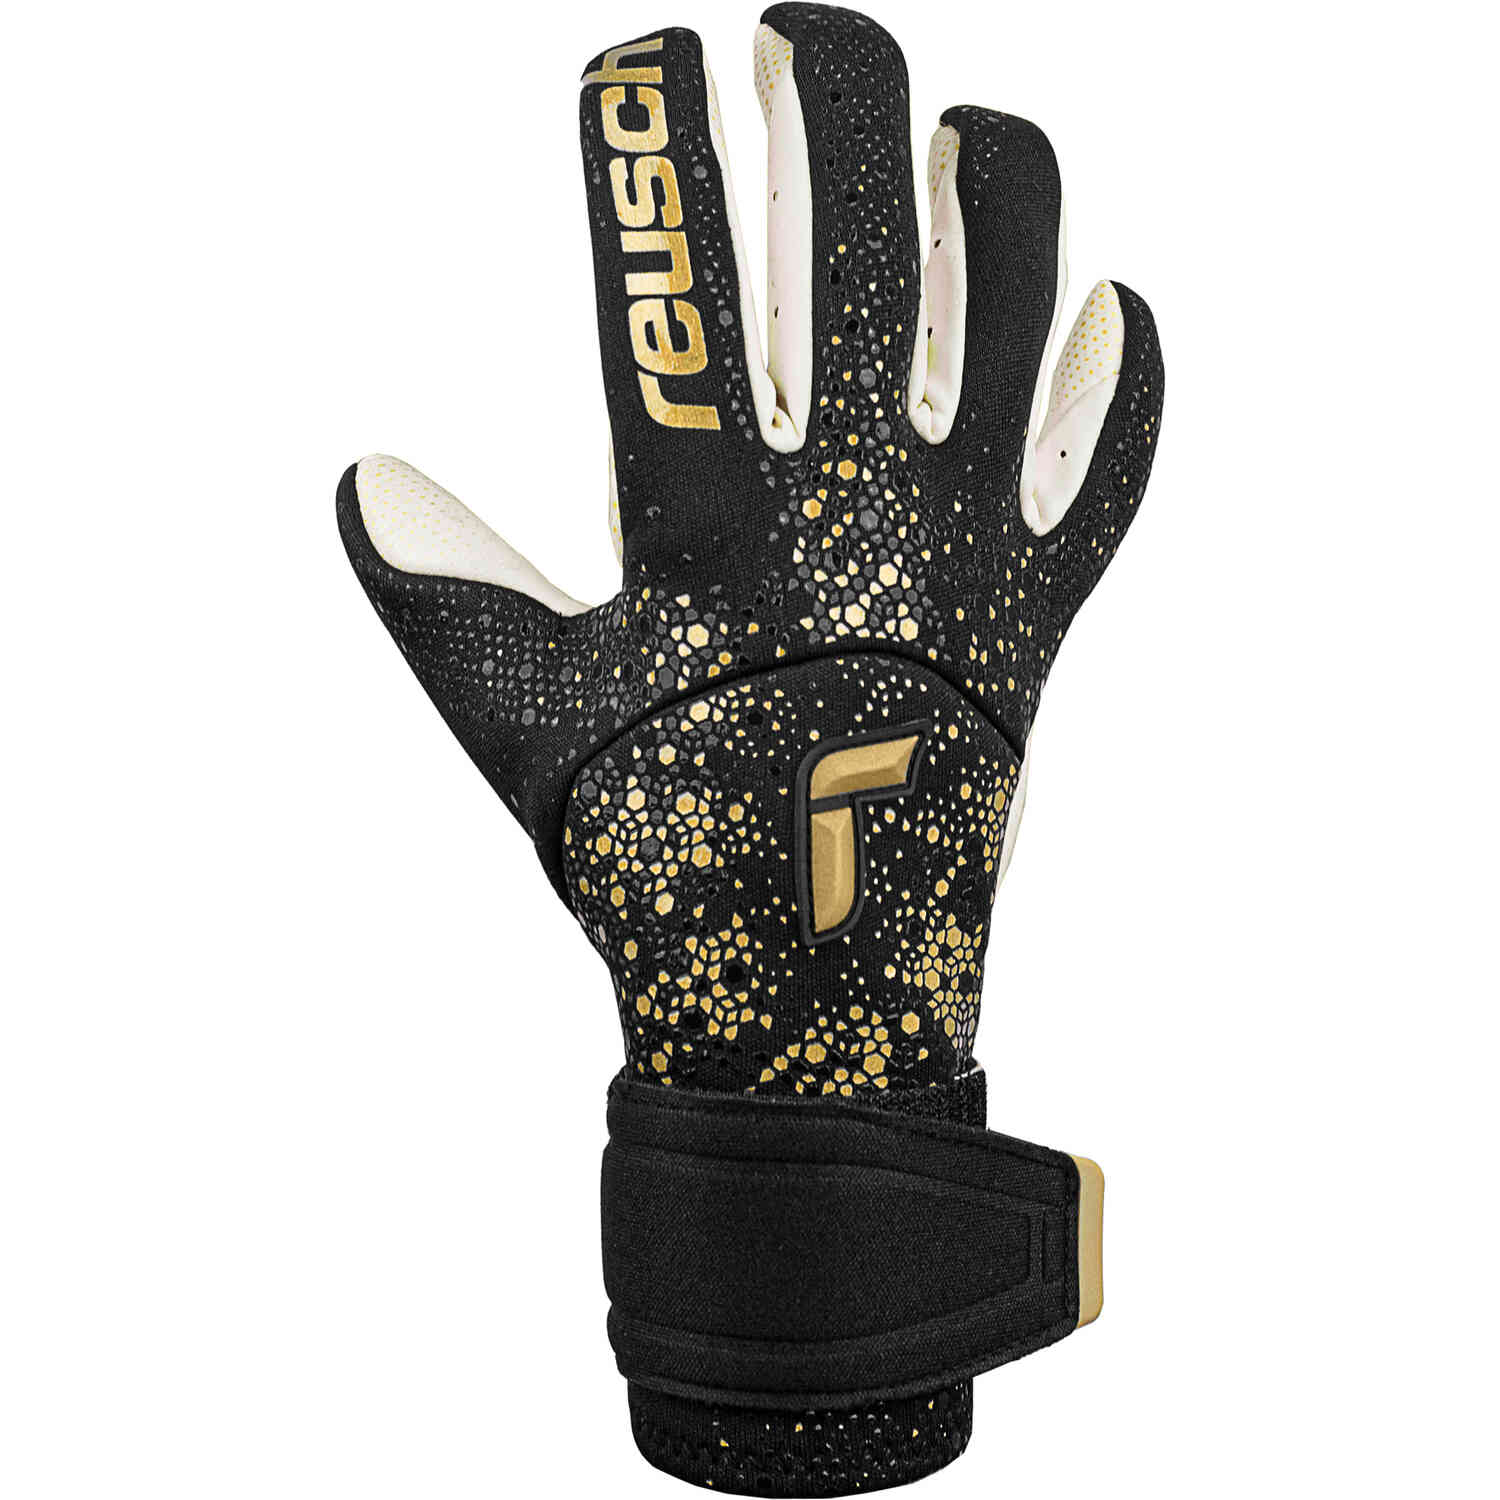 Reusch Pure Contact Gold X Glueprint Goalkeeper Gloves – Black & Gold